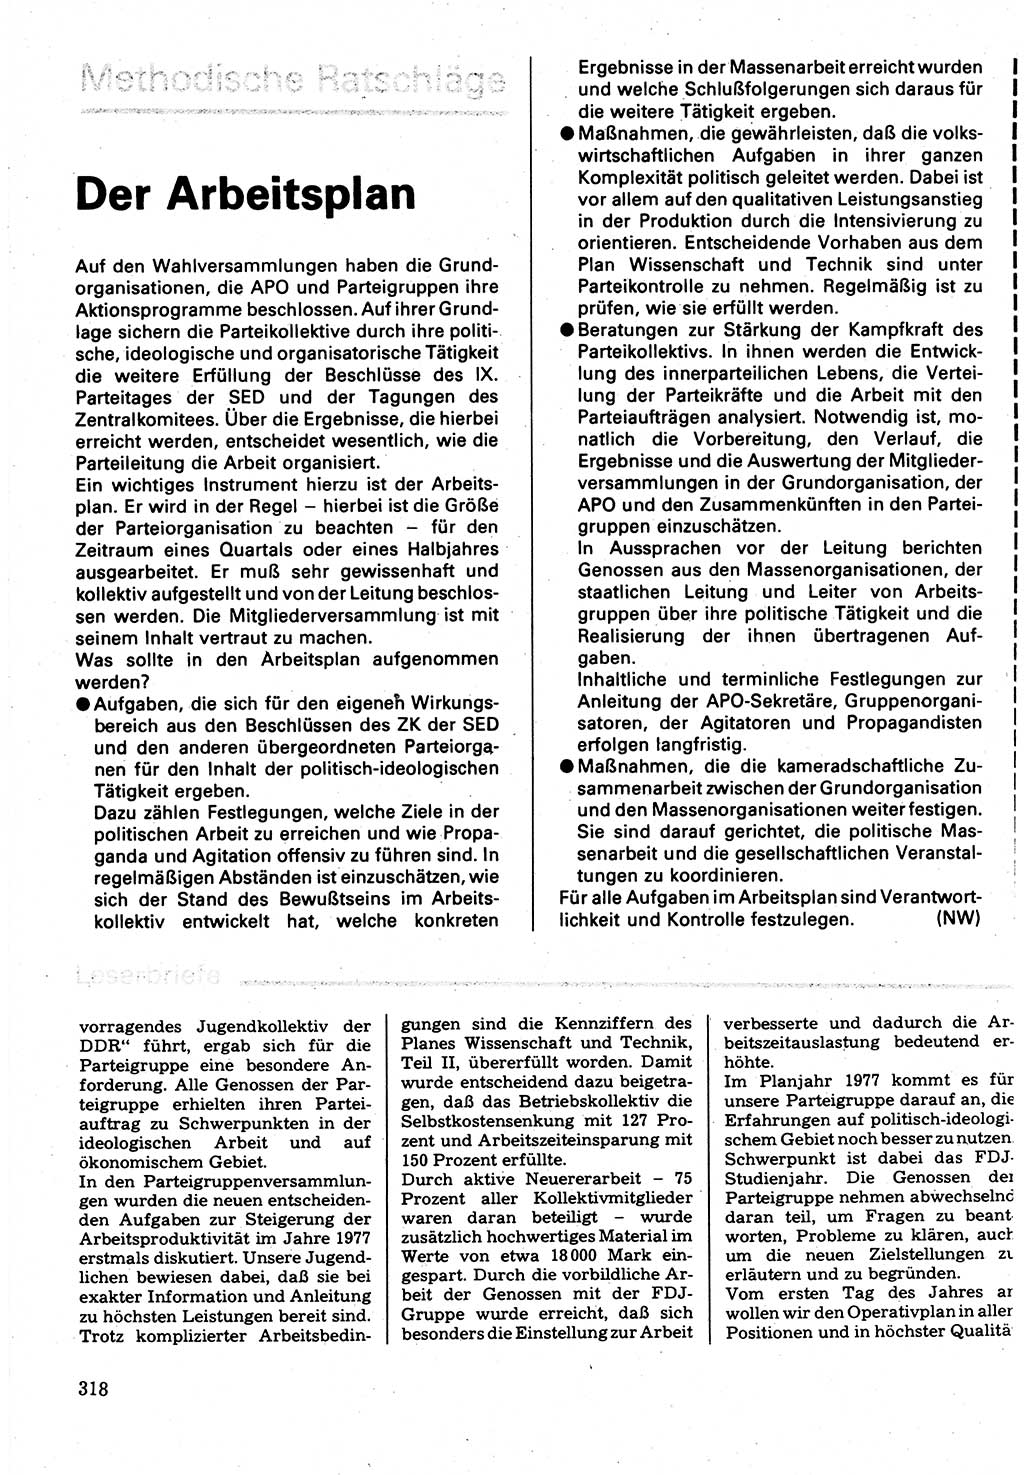 Neuer Weg (NW), Organ des Zentralkomitees (ZK) der SED (Sozialistische Einheitspartei Deutschlands) für Fragen des Parteilebens, 32. Jahrgang [Deutsche Demokratische Republik (DDR)] 1977, Seite 318 (NW ZK SED DDR 1977, S. 318)